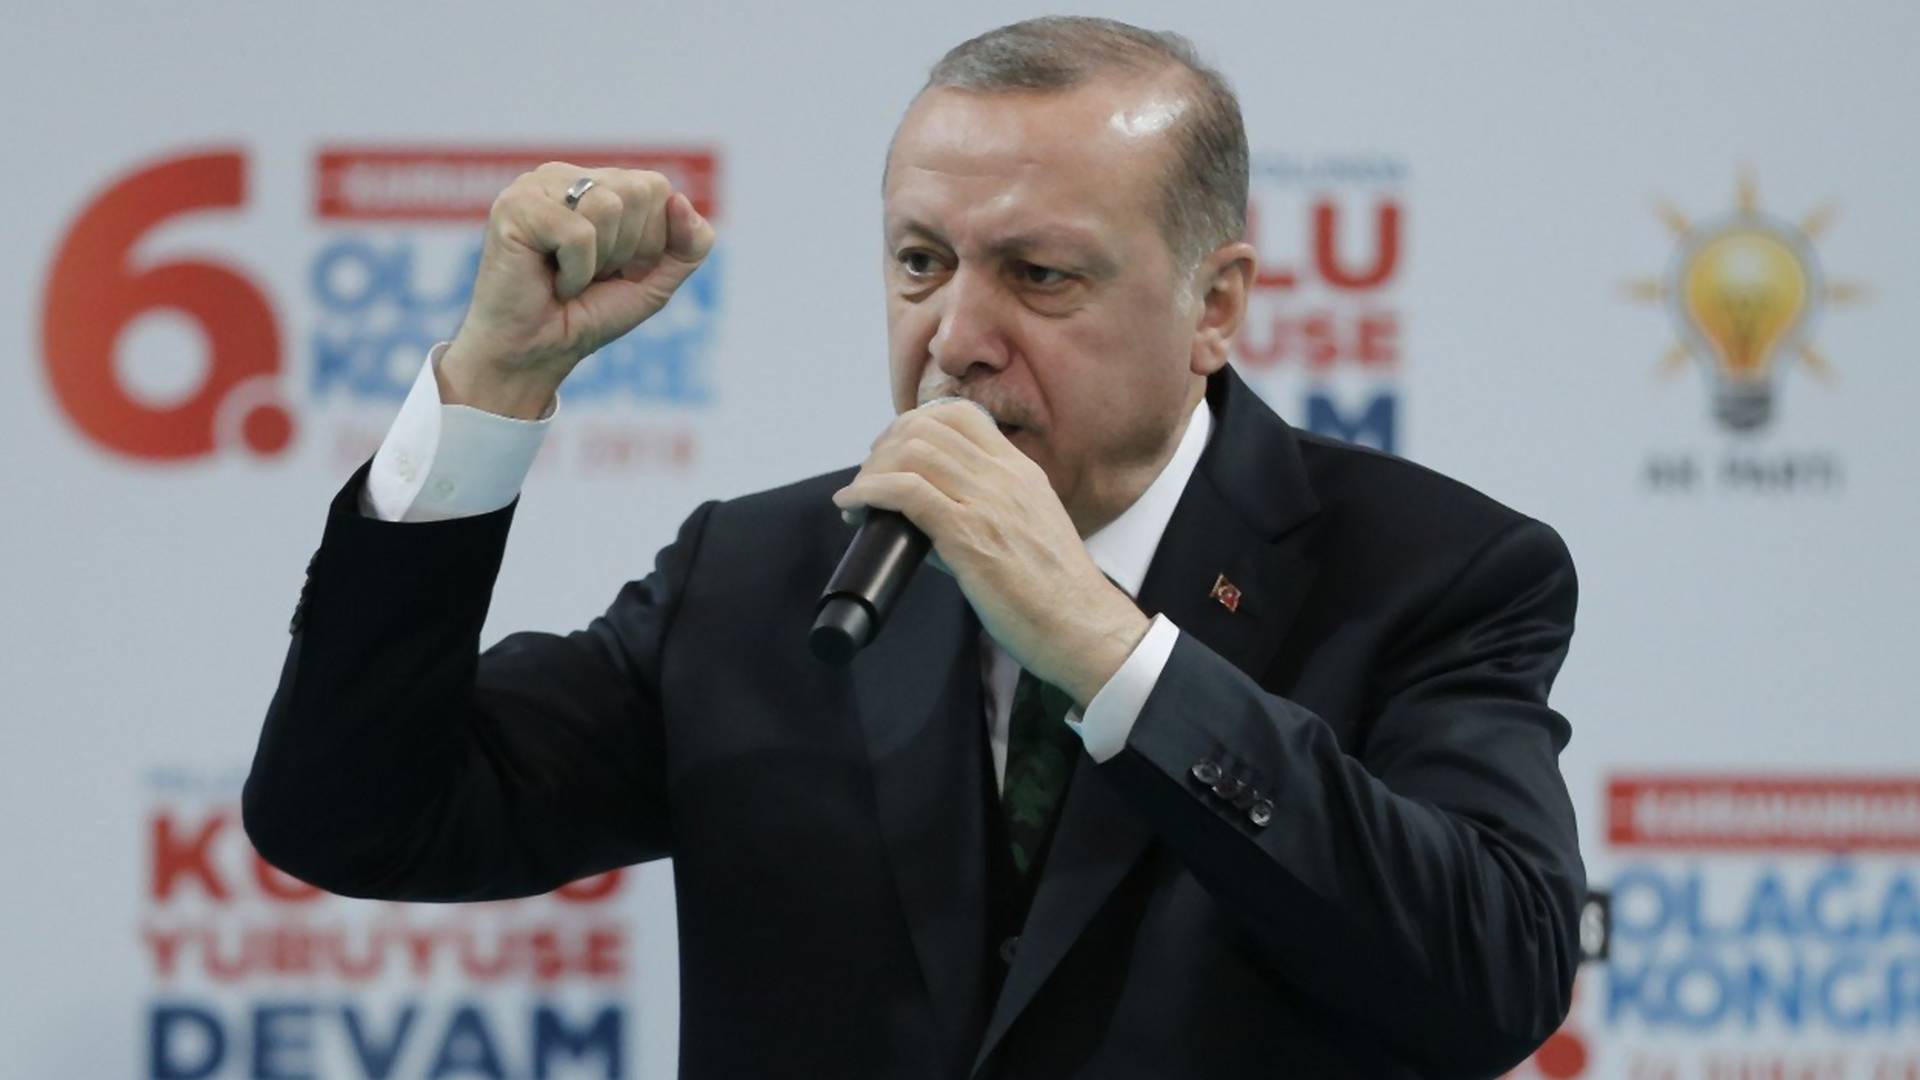 "Ako pogine, staviće zastavu preko nje": Erdogan šokirao svet razgovorom s uplakanom devojčicom